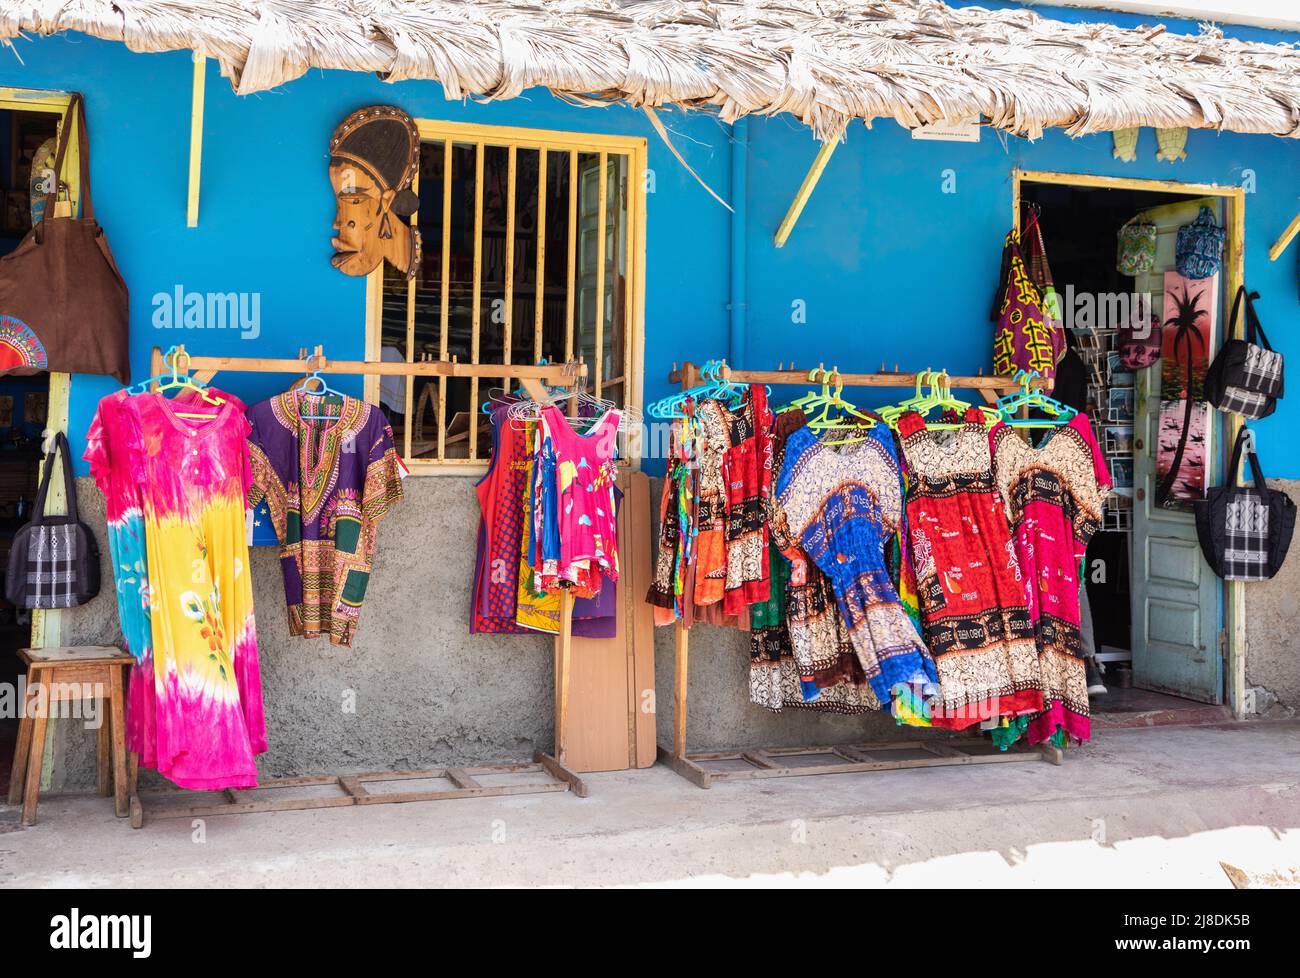 Abbigliamento colorato in vendita all'esterno di un negozio a Palmeira, isola di SAL, Capo Verde, Isole Cabo Verde, Africa Foto Stock